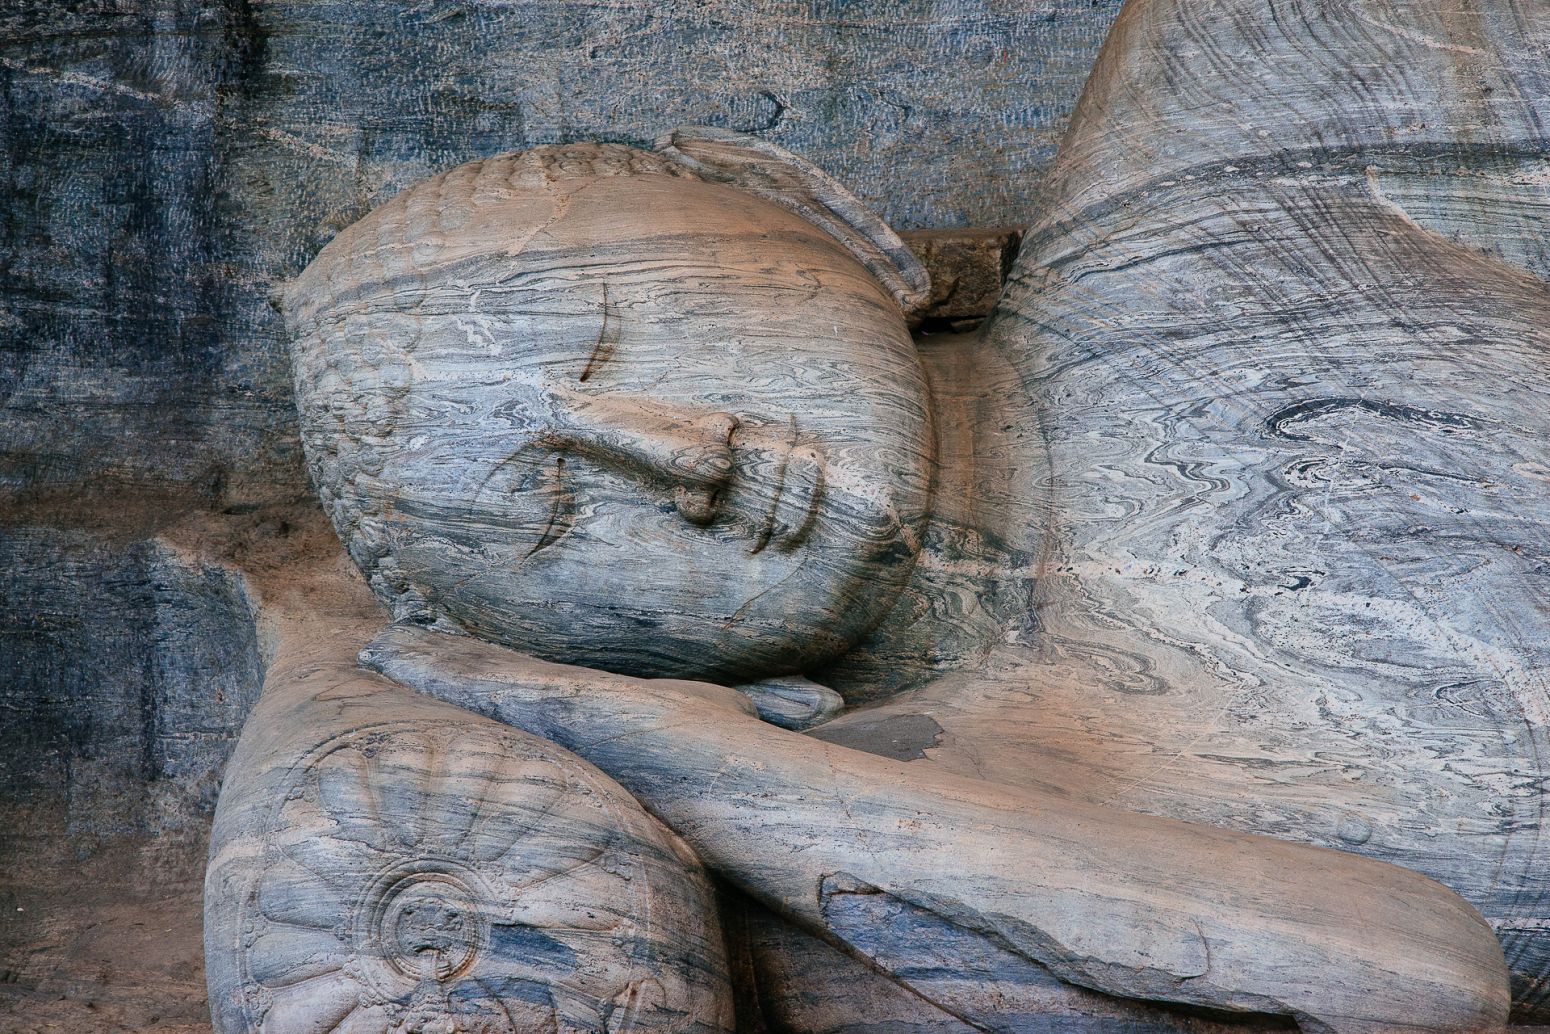 Gal Viharaya Buddha statue, Polonnaruwa, Sri Lanka